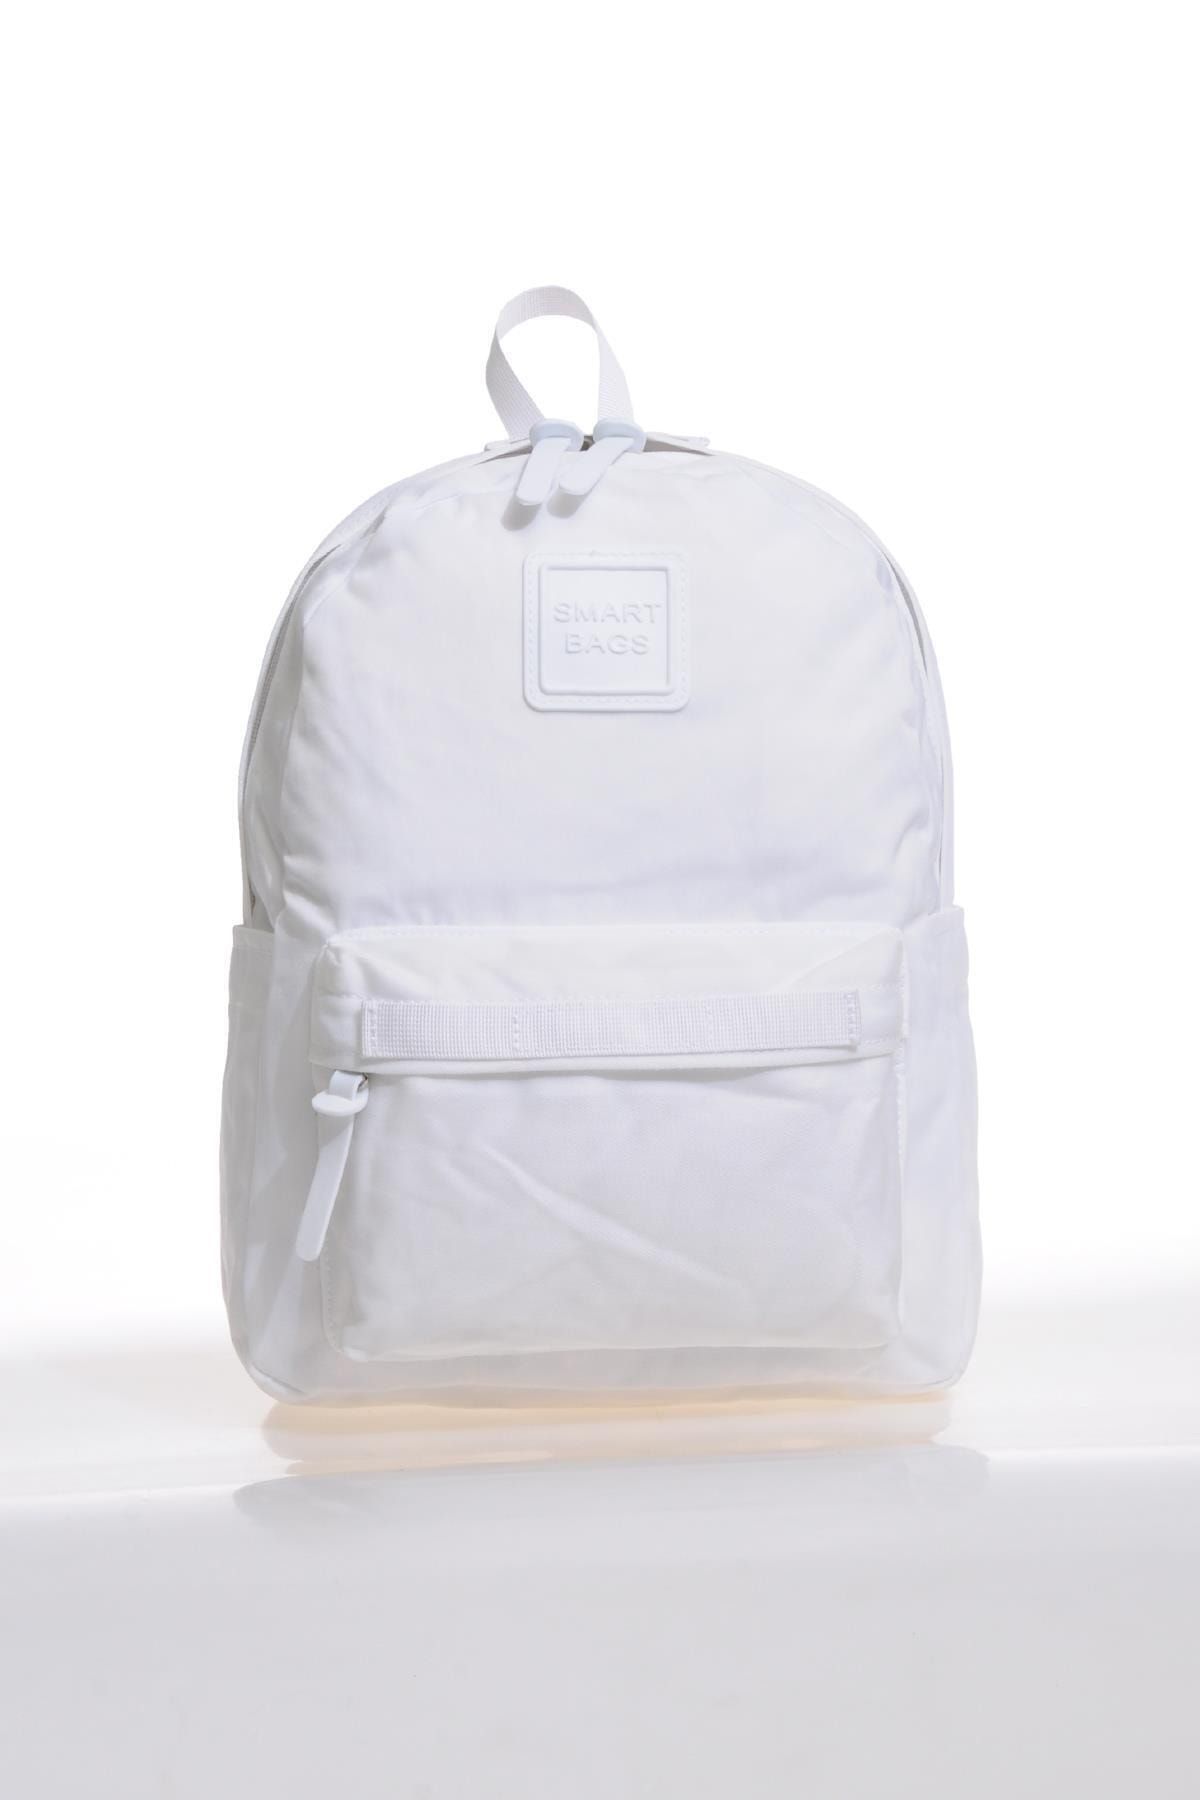 Smart Bags Smb6003-0002 Beyaz Kadın Sırt Çantası